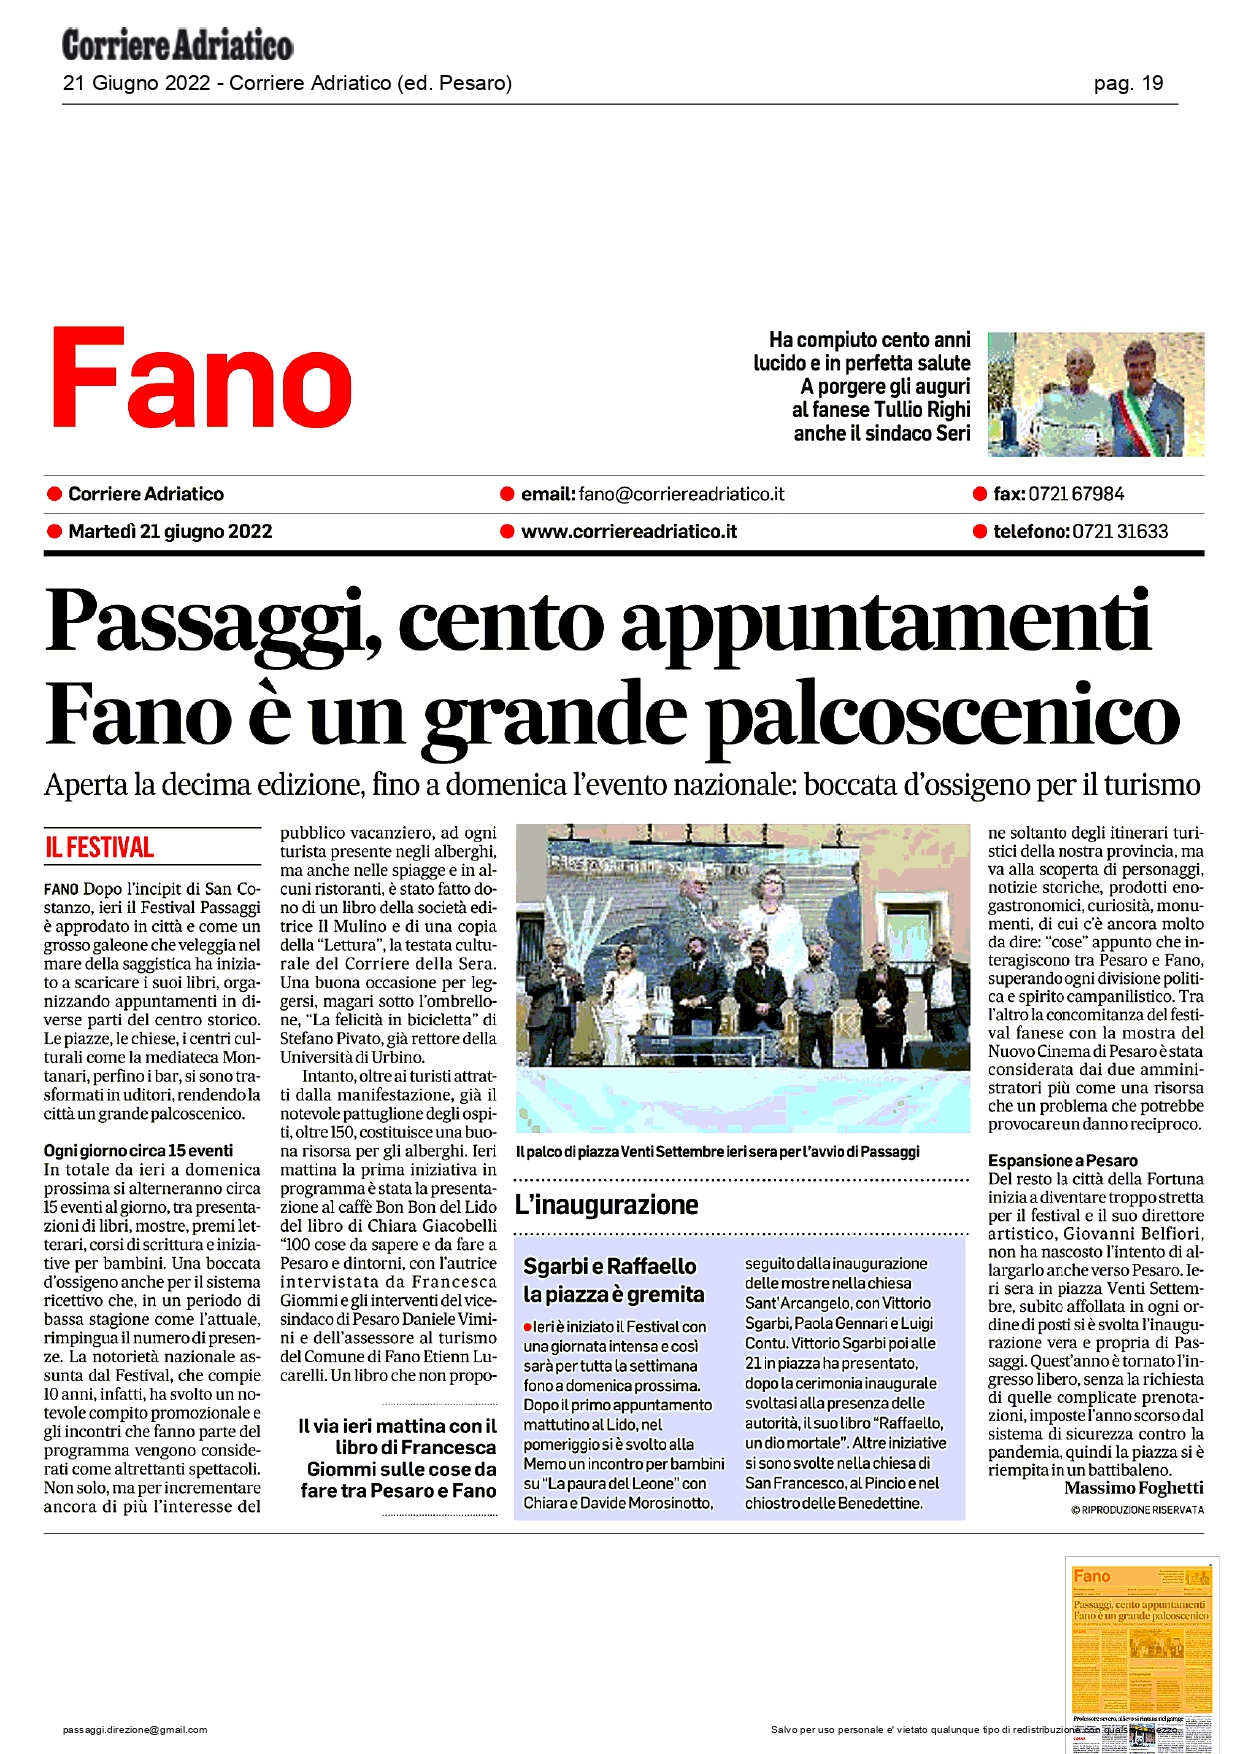 Corriere-Adriatico-ed.-Pesaro-Passaggi-cento-appuntamenti-Fano-e-un-grande-palcoscenico